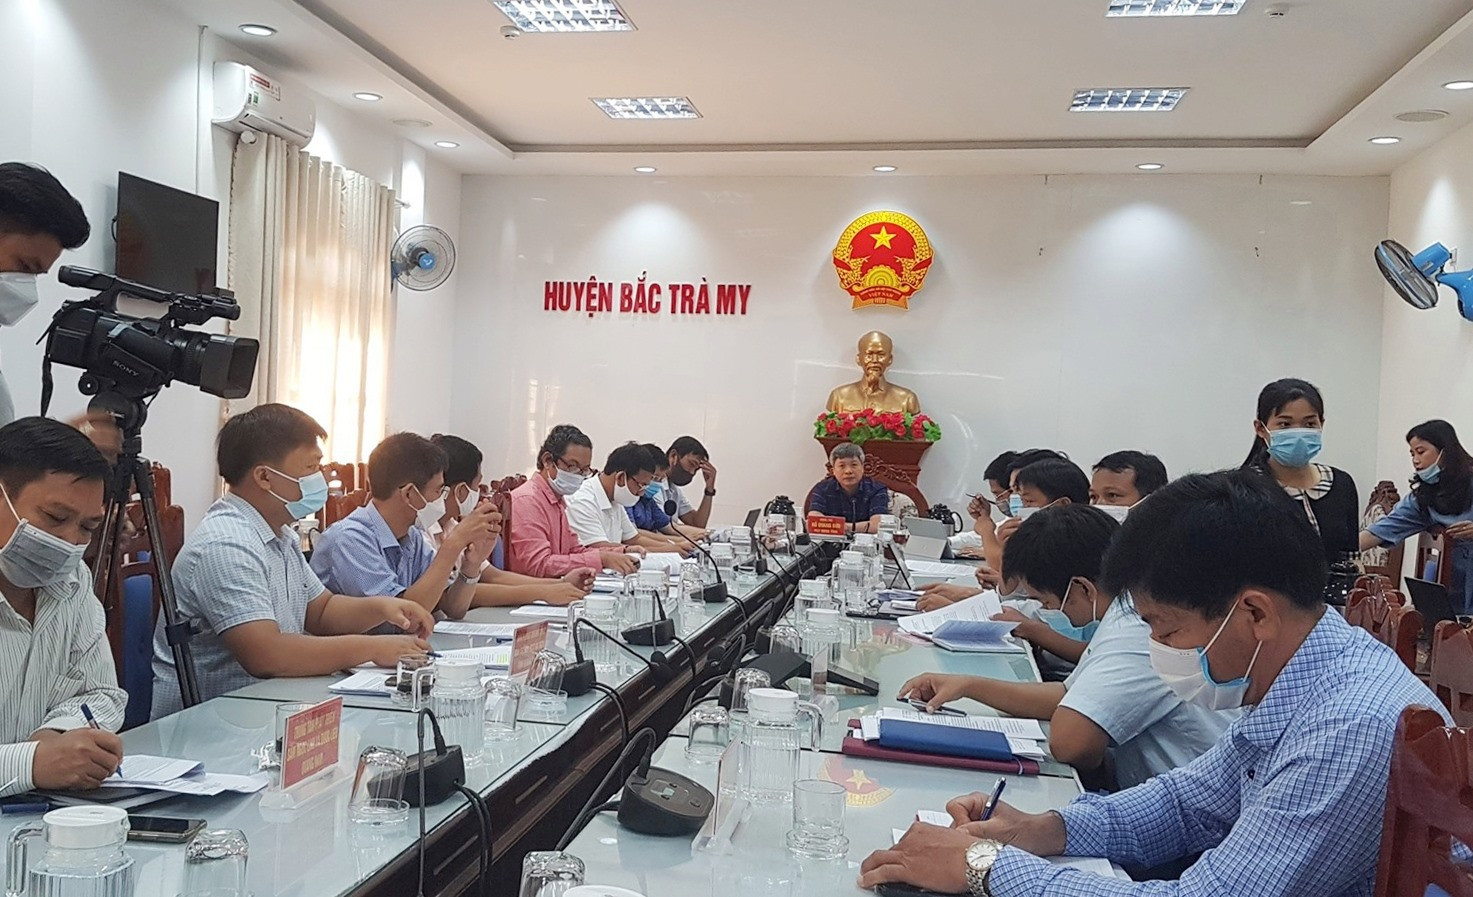 Phó Chủ tịch UBND tỉnh Hồ Quang Bửu làm việc với huyện Bắc Trà My sáng nay. Ảnh: D.L